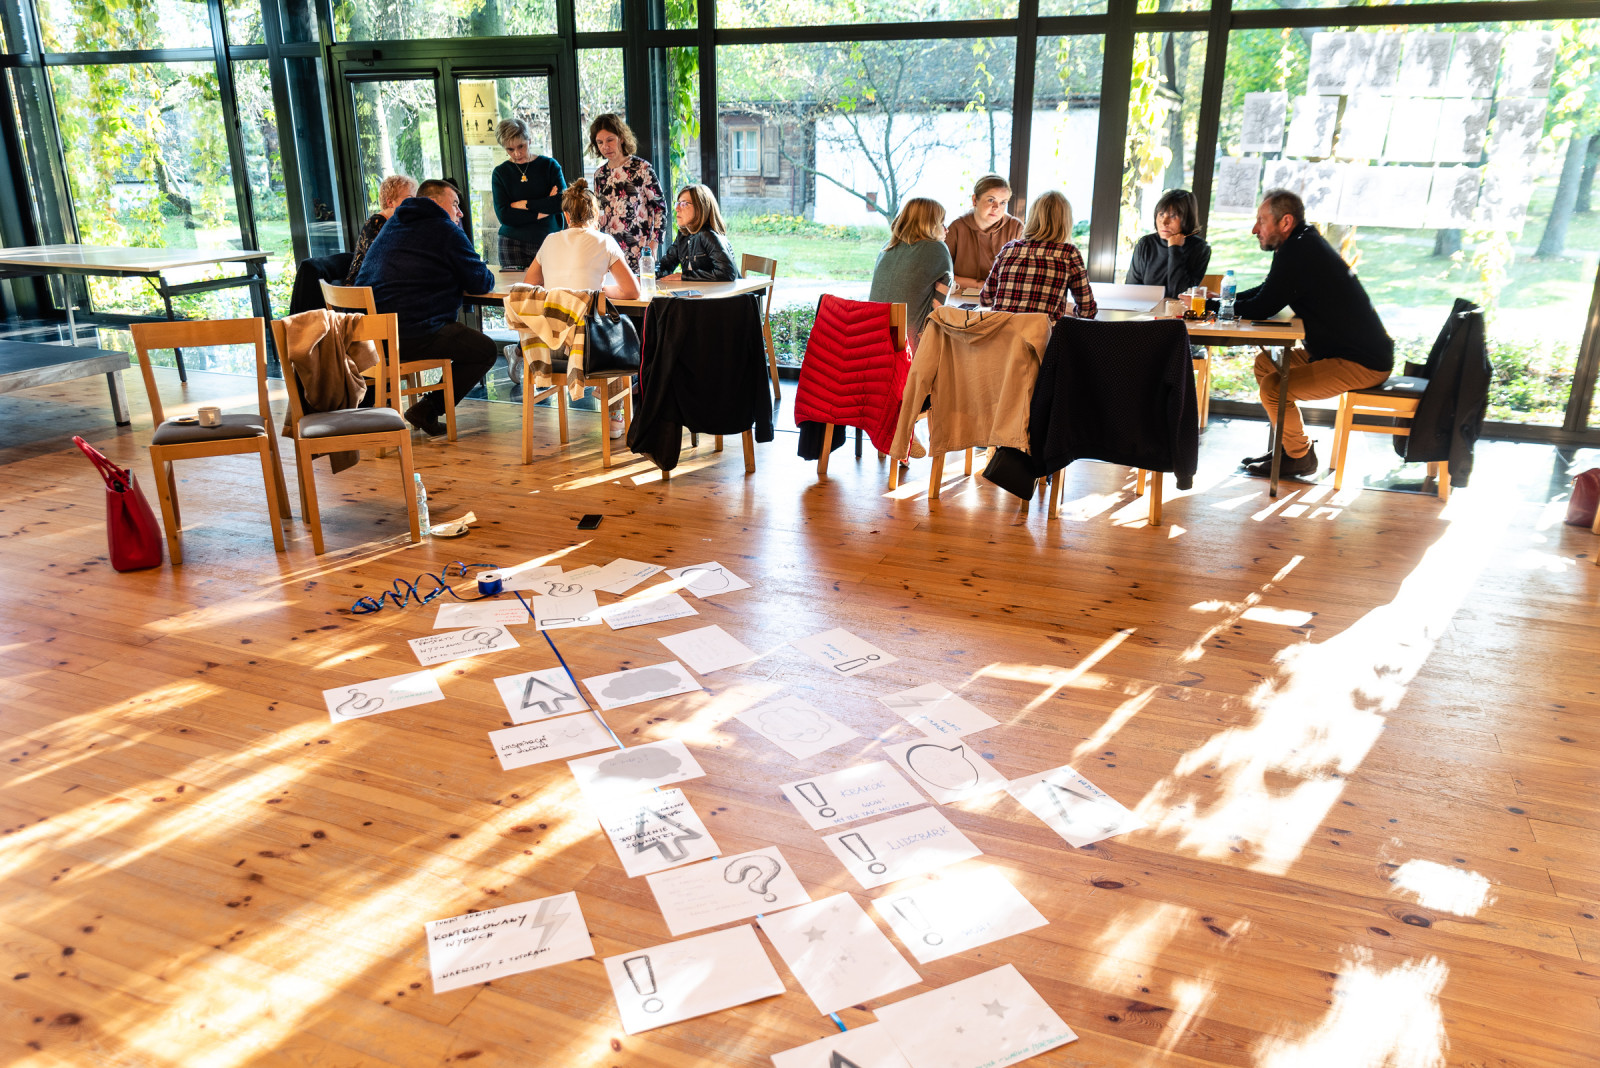 fotorelacja z warsztatów: osoby siedzące przy stole i rozmawiające, trenerzy prowadzący zajęcia, zdjęcie grupowe